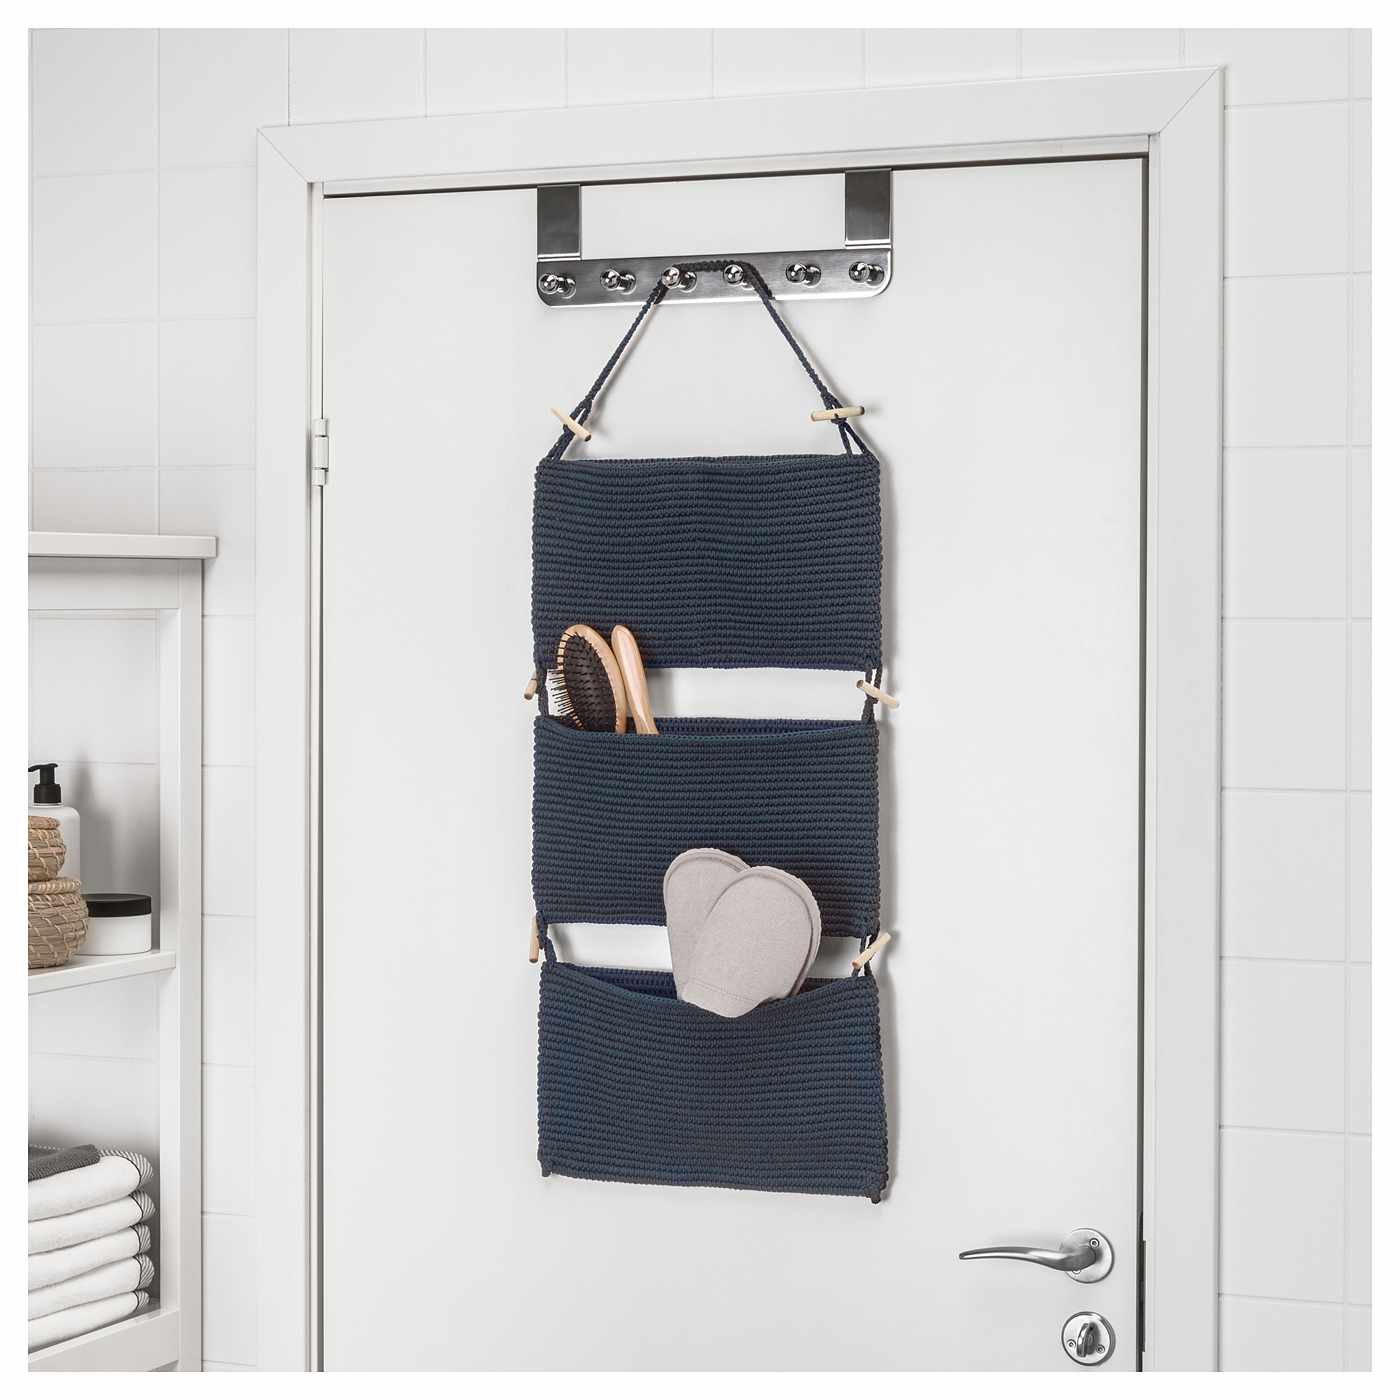 Mehr Stauraum im kleinen Badezimmer clevere platzsparende Ideen von Ikea